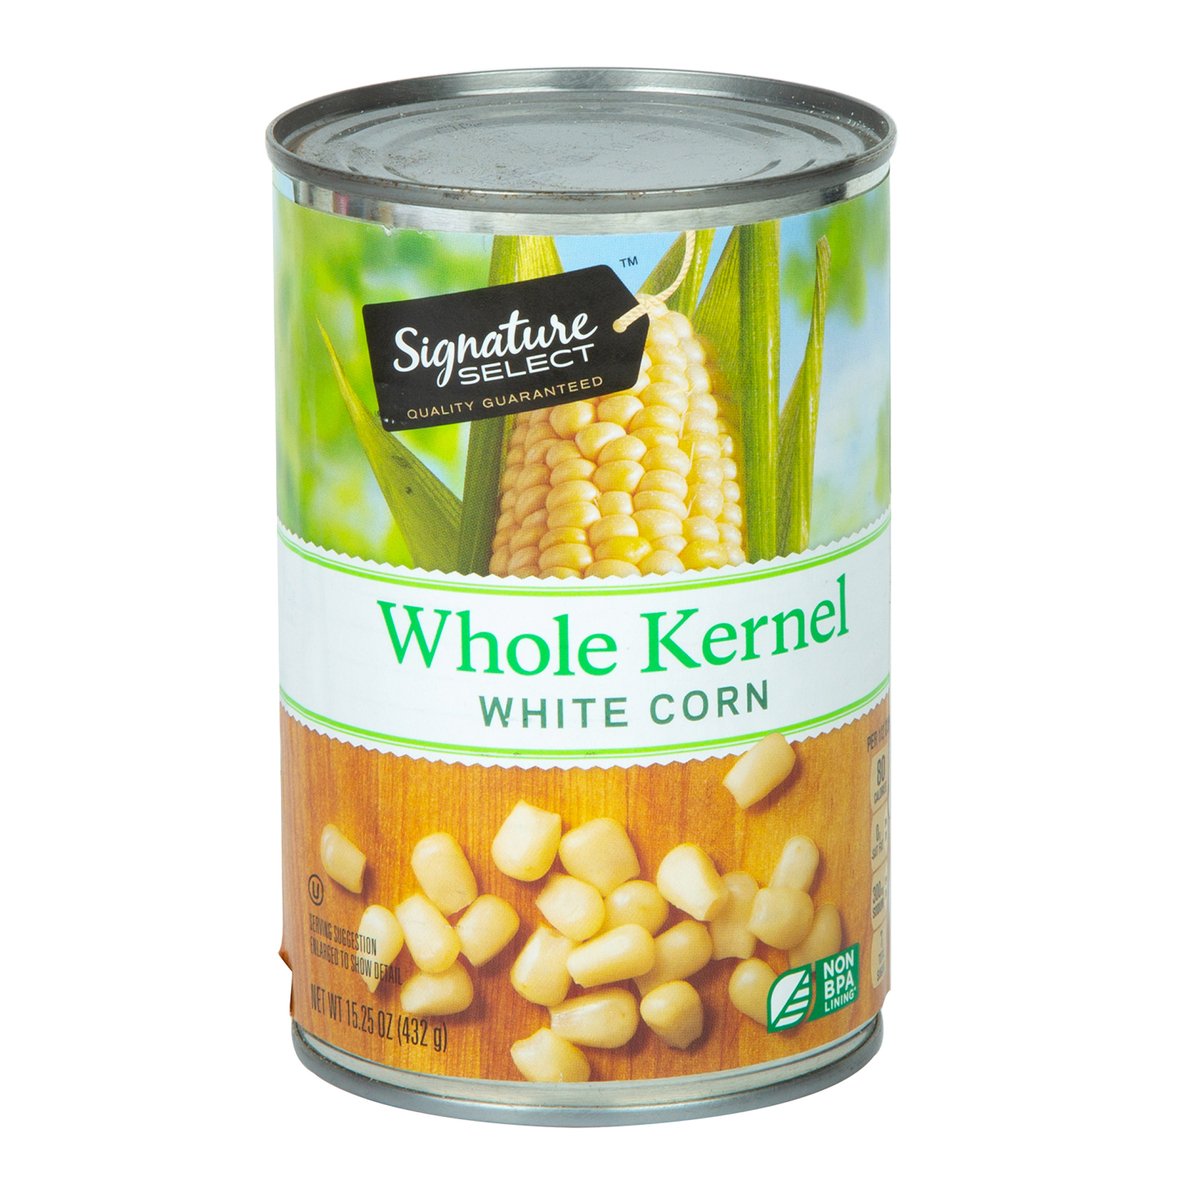 اشتري قم بشراء Signature Select Whole Kernel White Corn 432 g Online at Best Price من الموقع - من لولو هايبر ماركت Cand Whl.Kernel Corn في الامارات